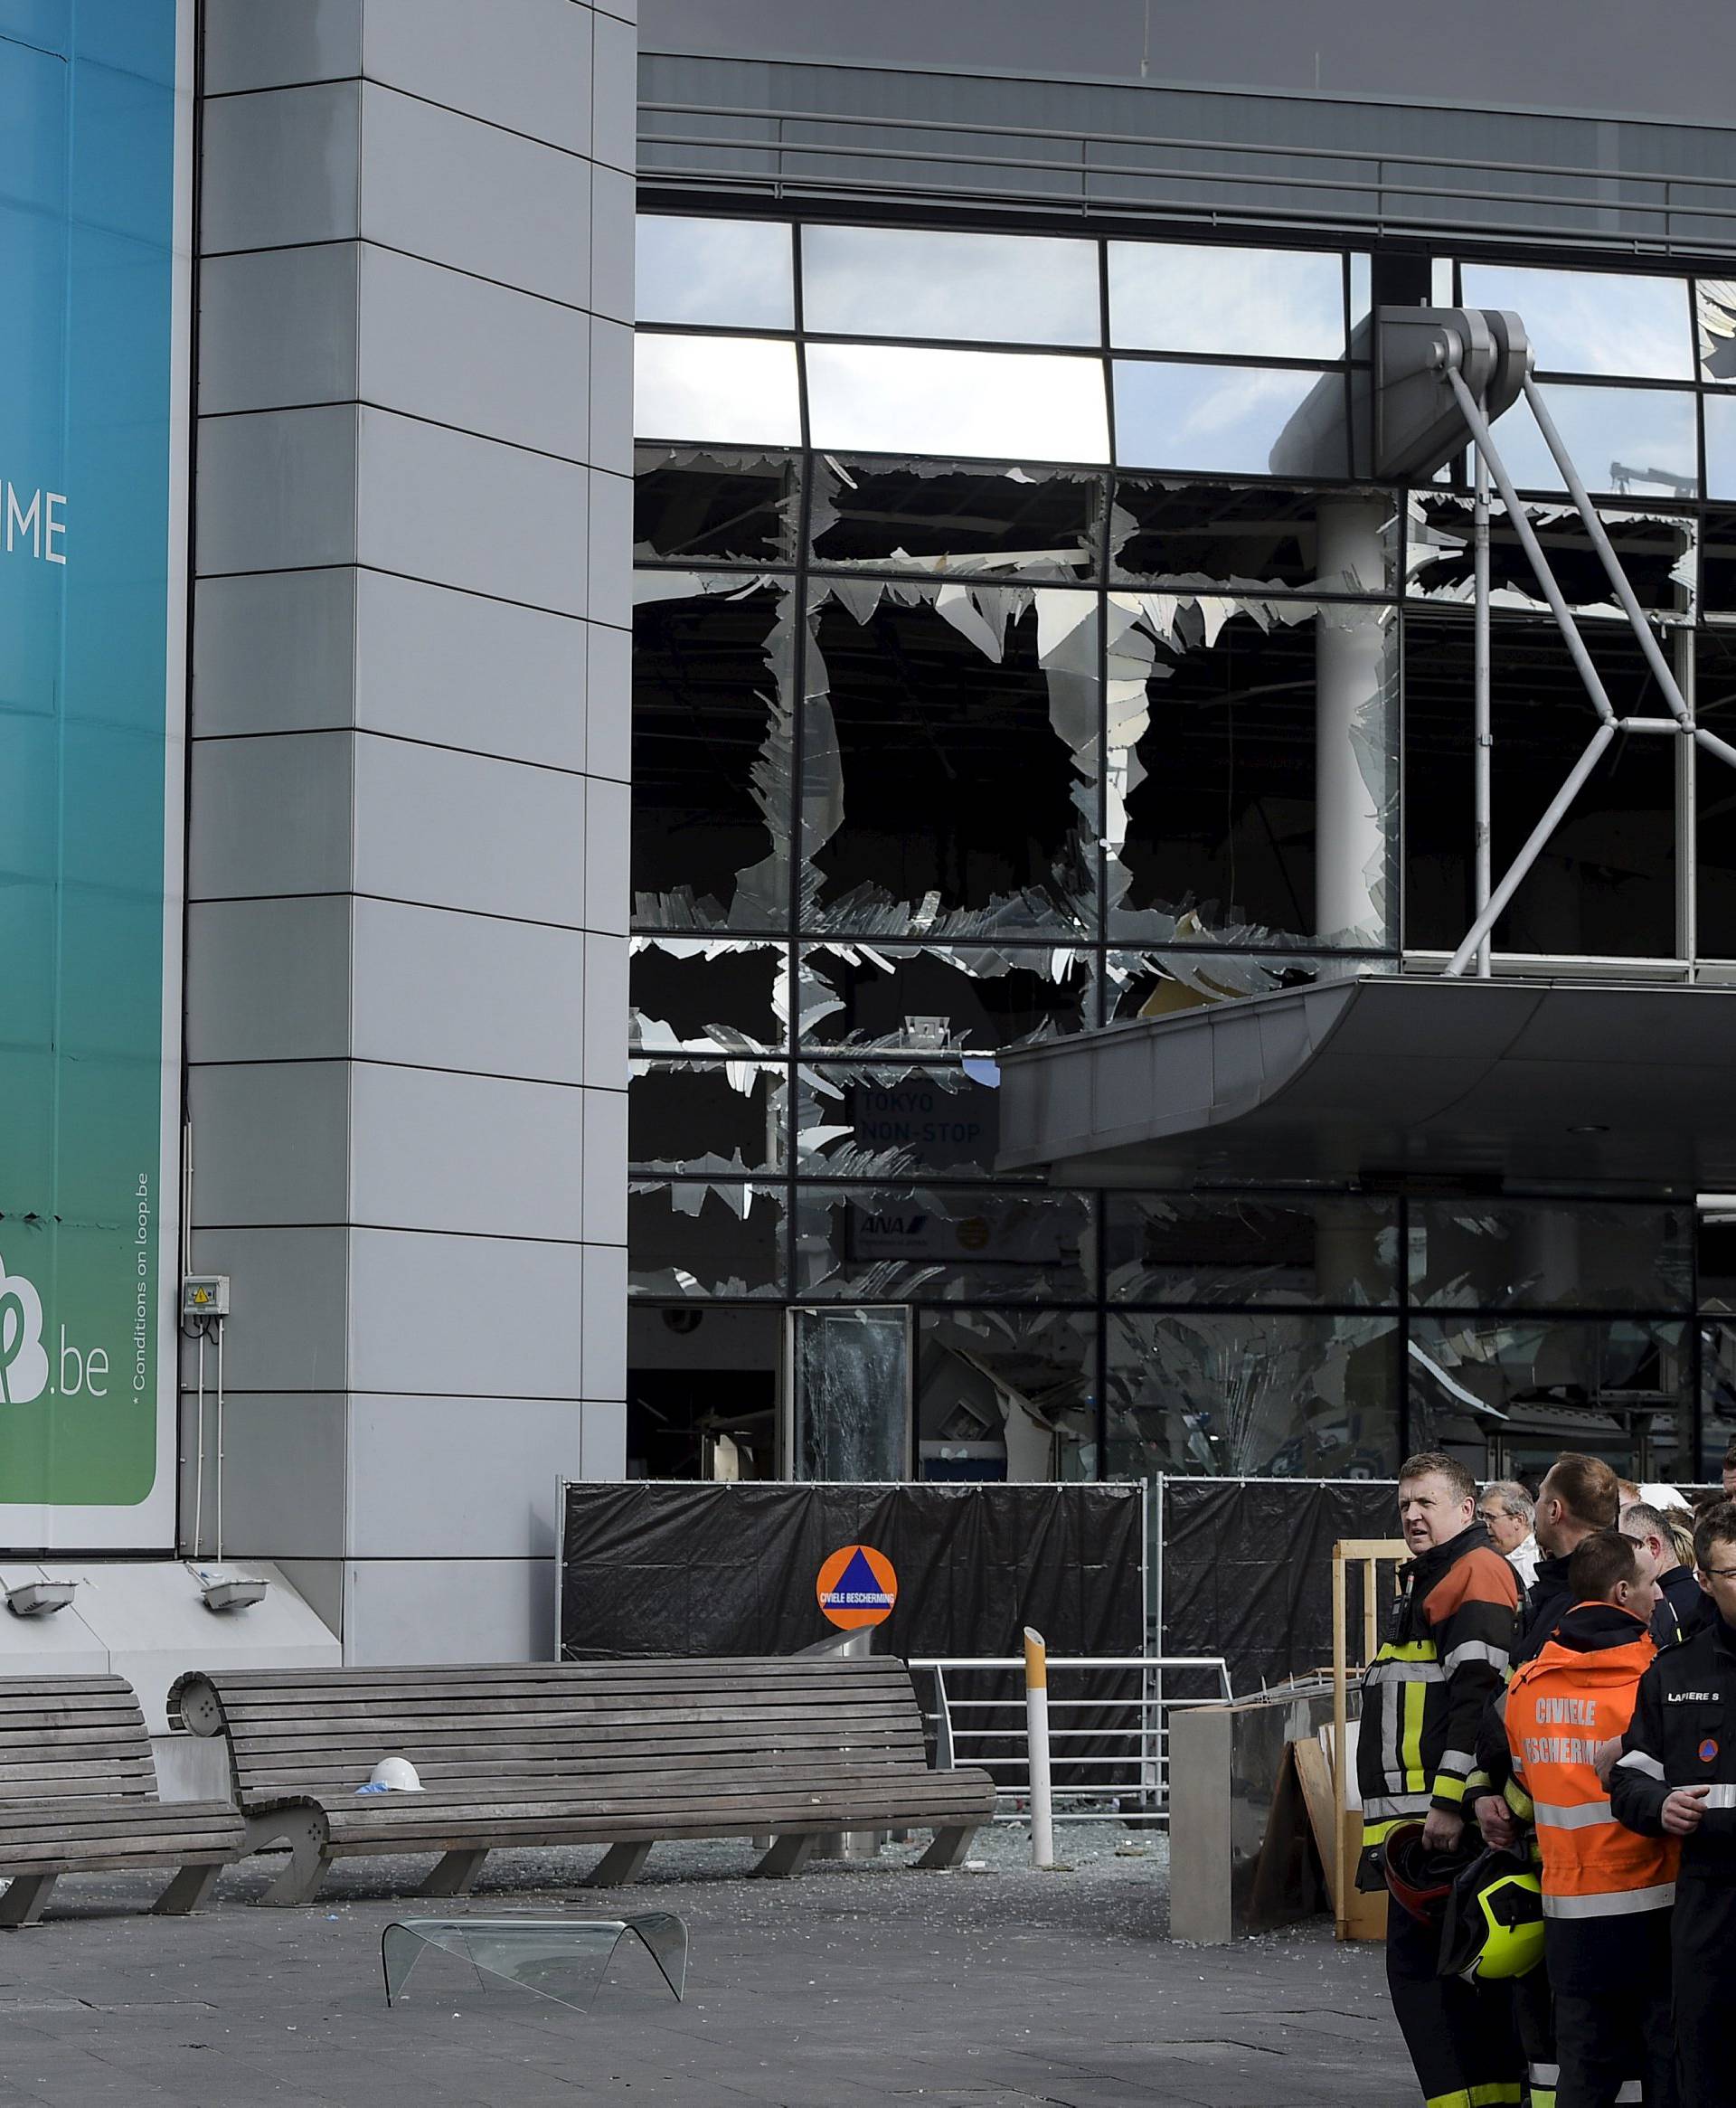 Zračna luka ostaje zatvorena, napadača optužili za terorizam